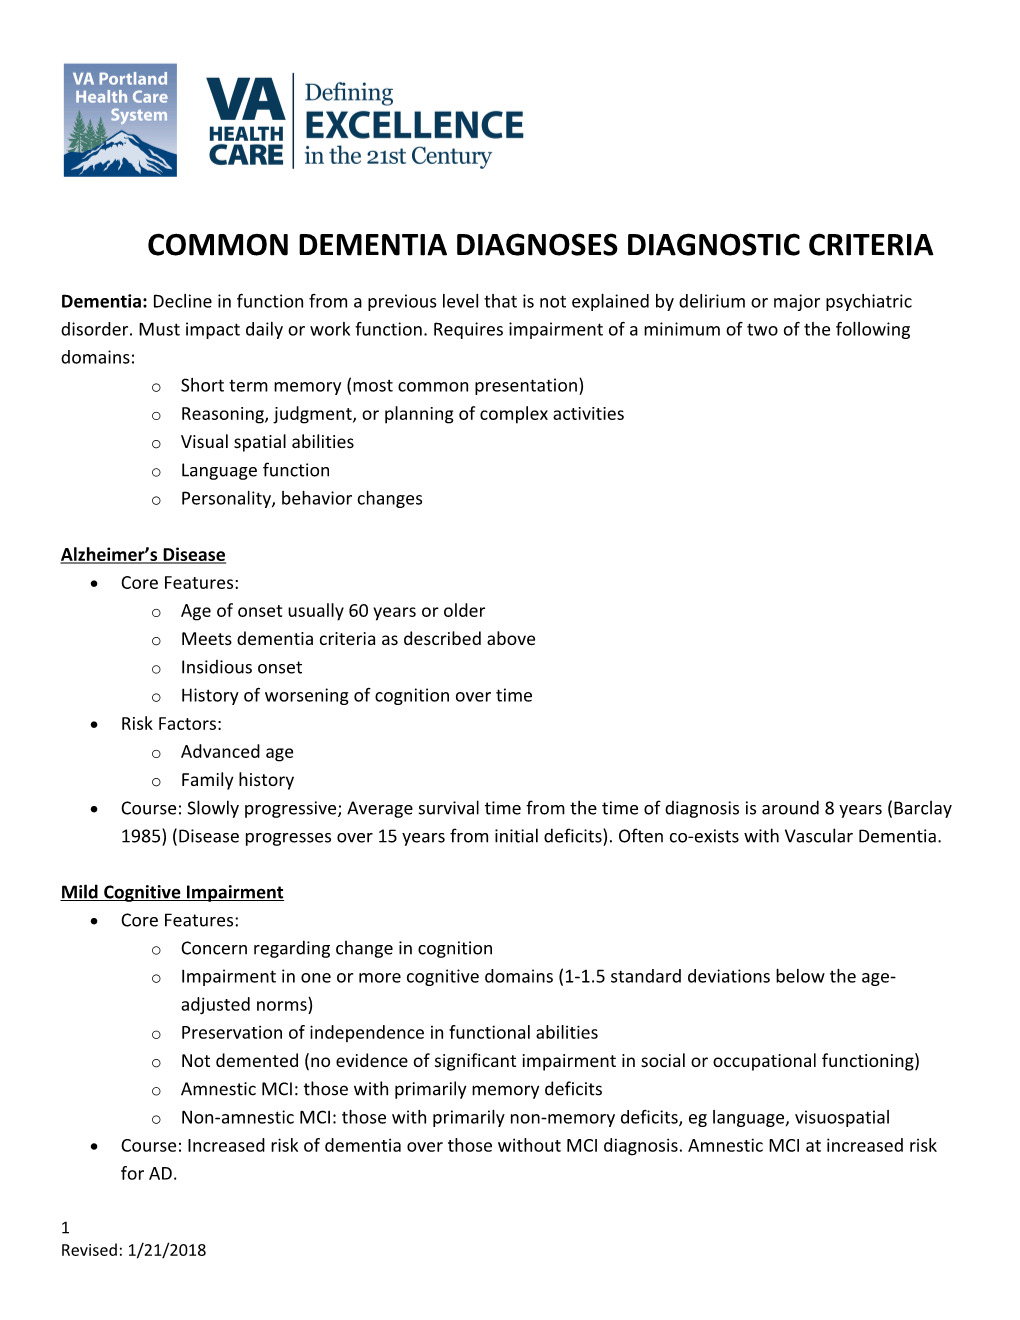 Common Dementia Diagnoses Diagnostic Criteria